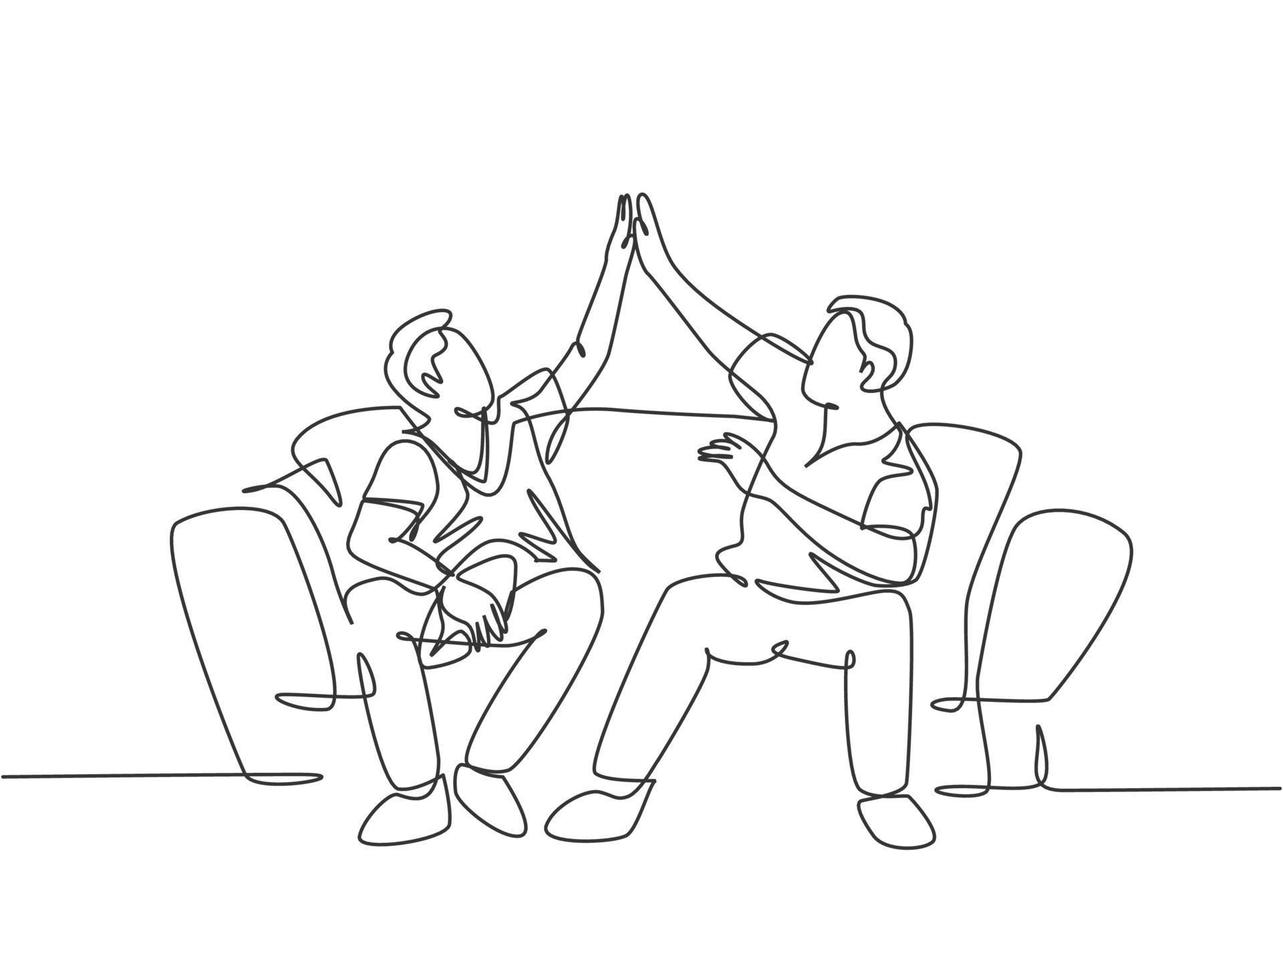 um único desenho linear de torcedores sentados no sofá assistindo ao jogo de seu clube de futebol americano favorito na televisão. conceito de clube de fãs. ilustração em vetor desenho desenho em linha contínua